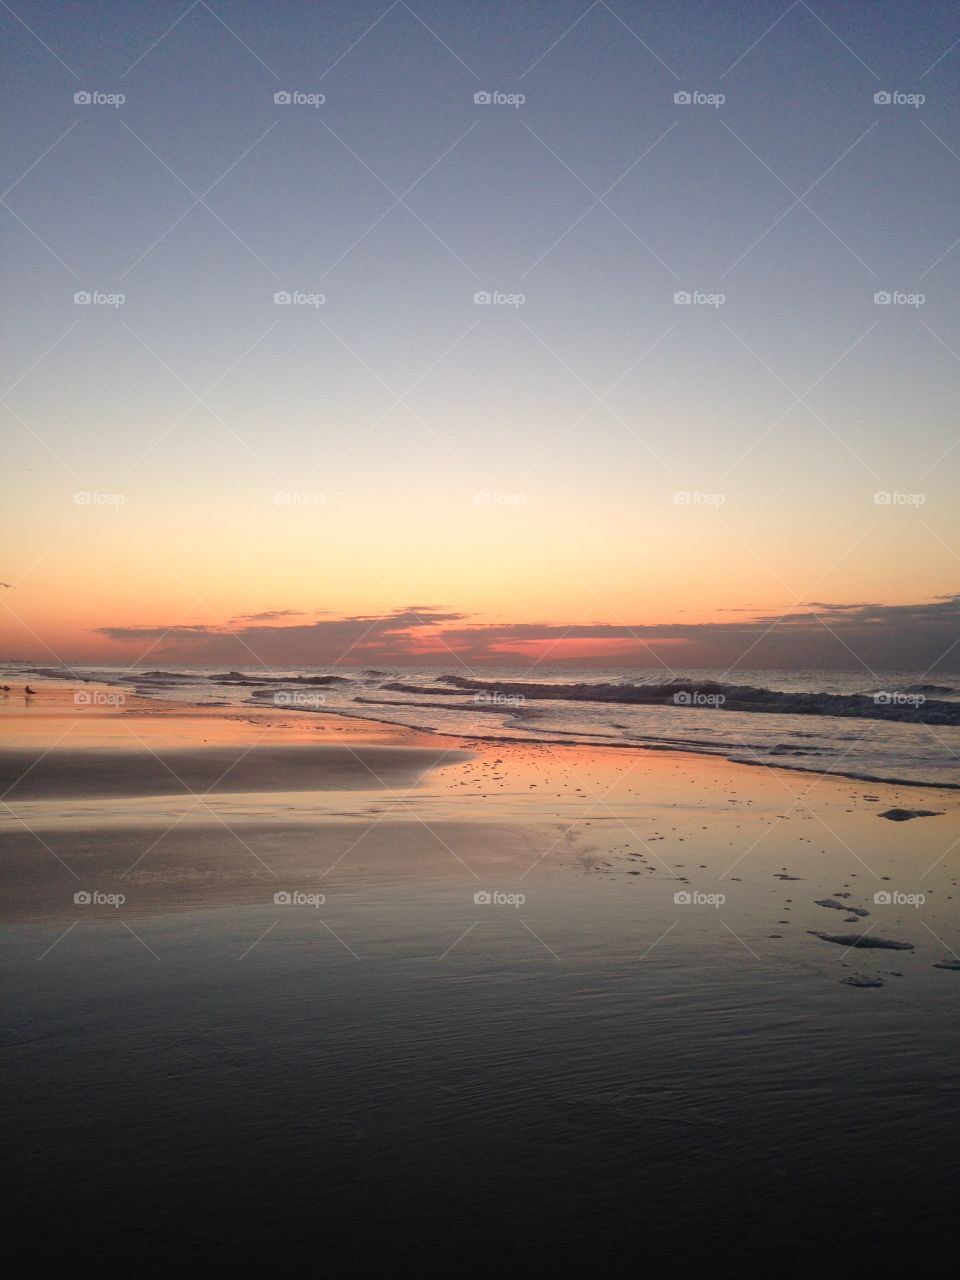 Myrtle beach sunrise